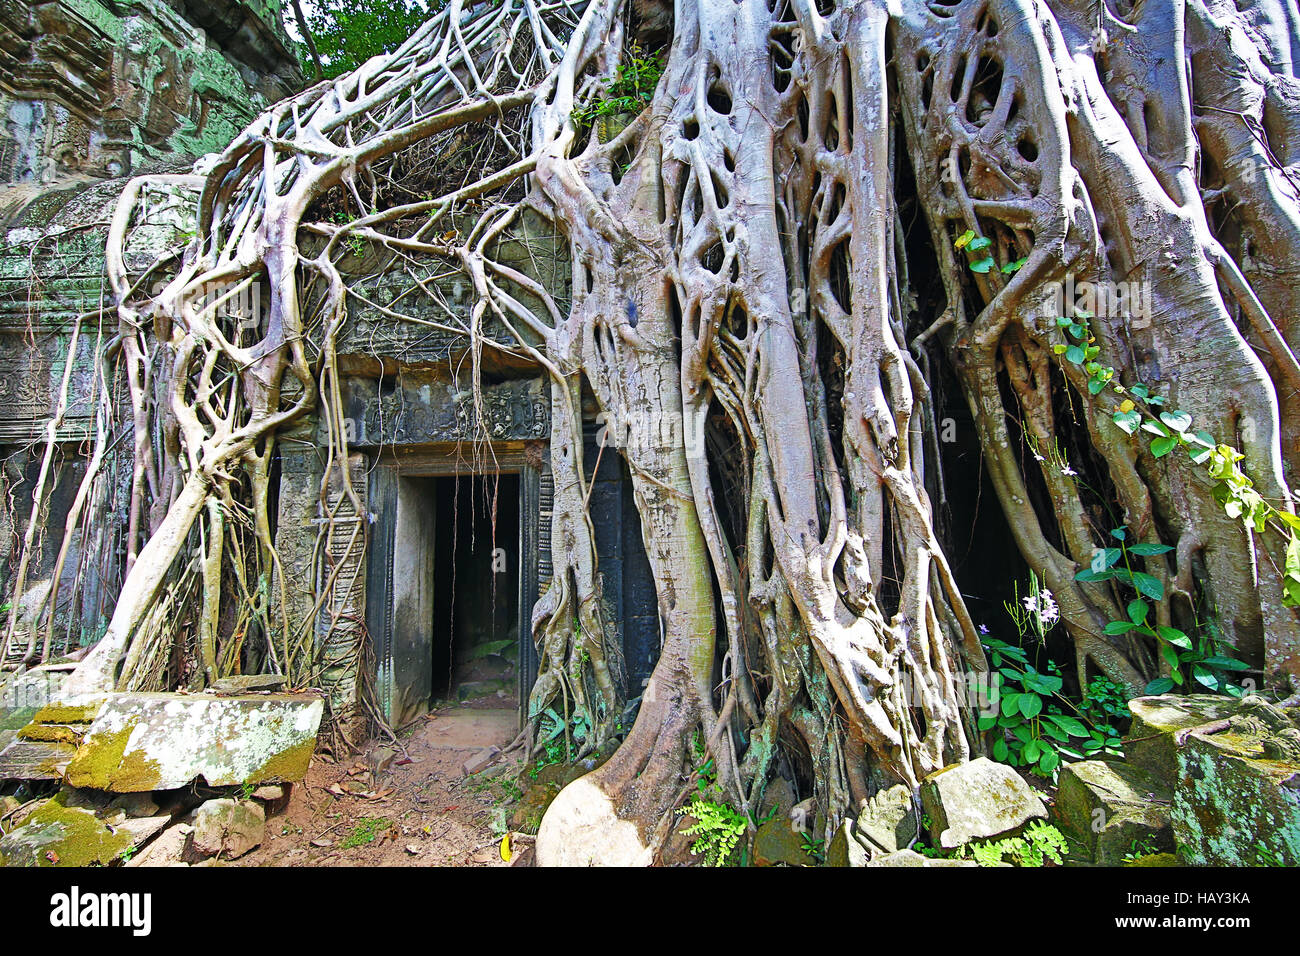 Les racines des arbres Spung couvrant ruines à Ta Prohm Temple, Angkor, Siem Reap, Cambodge Banque D'Images